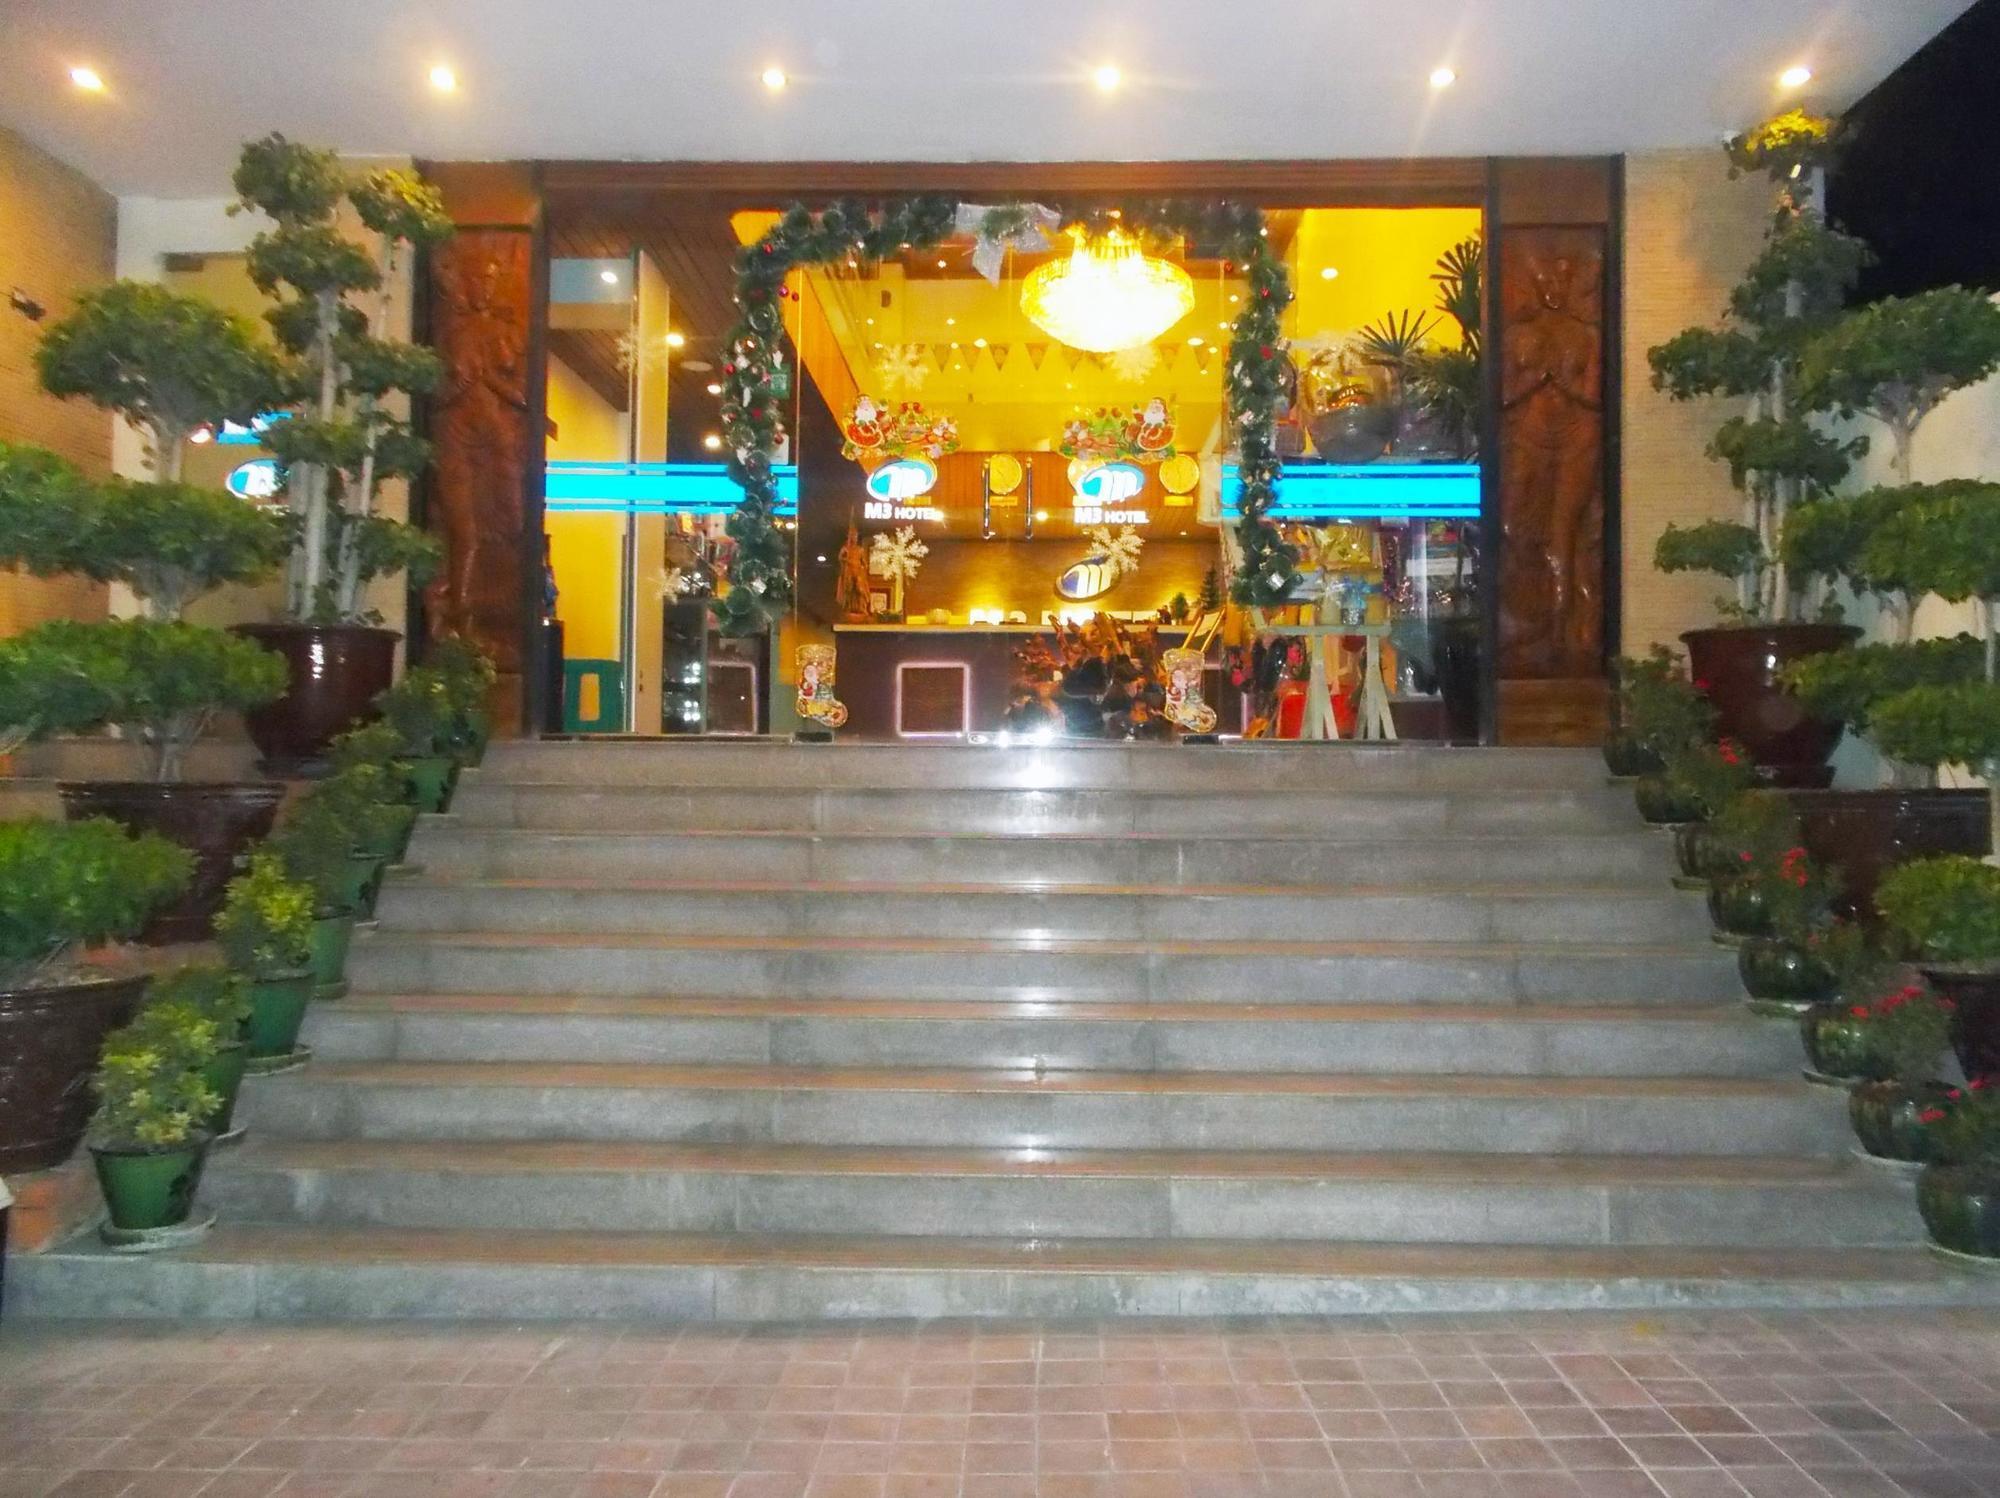 M3 호텔 만달레이 외부 사진